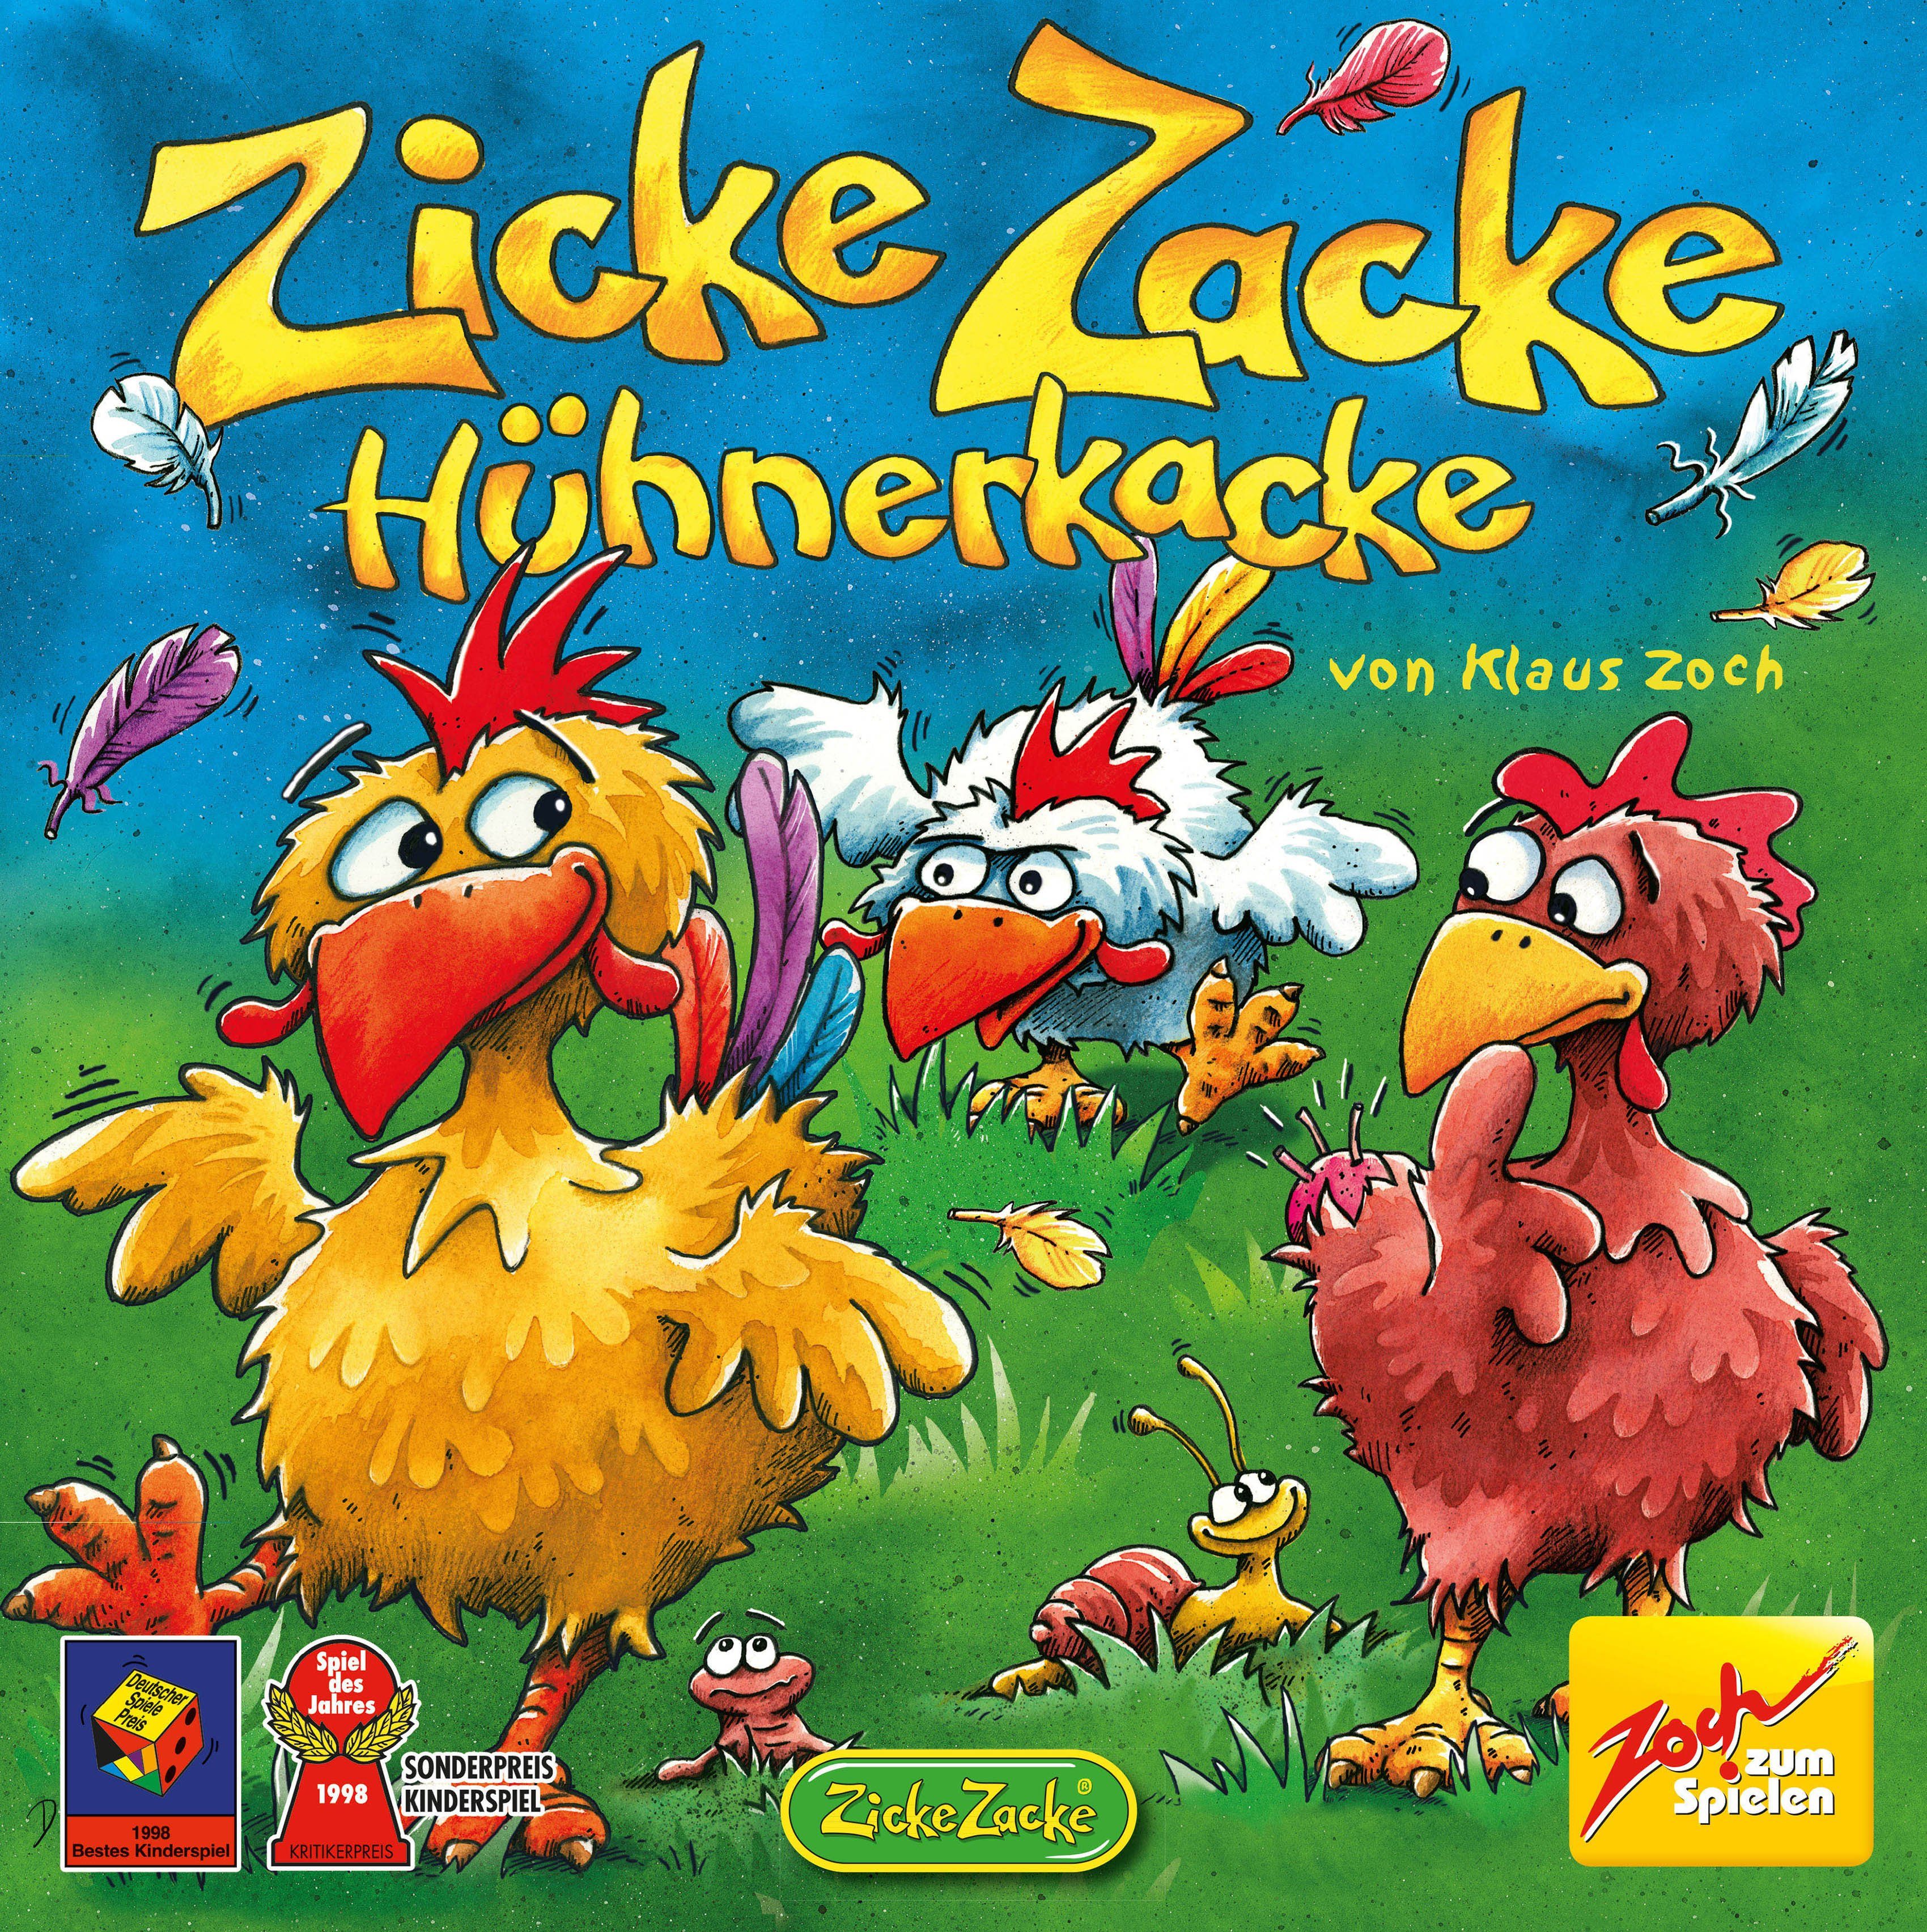 Zoch Spiel, Made Germany Hühnerkacke, in Zacke Zicke